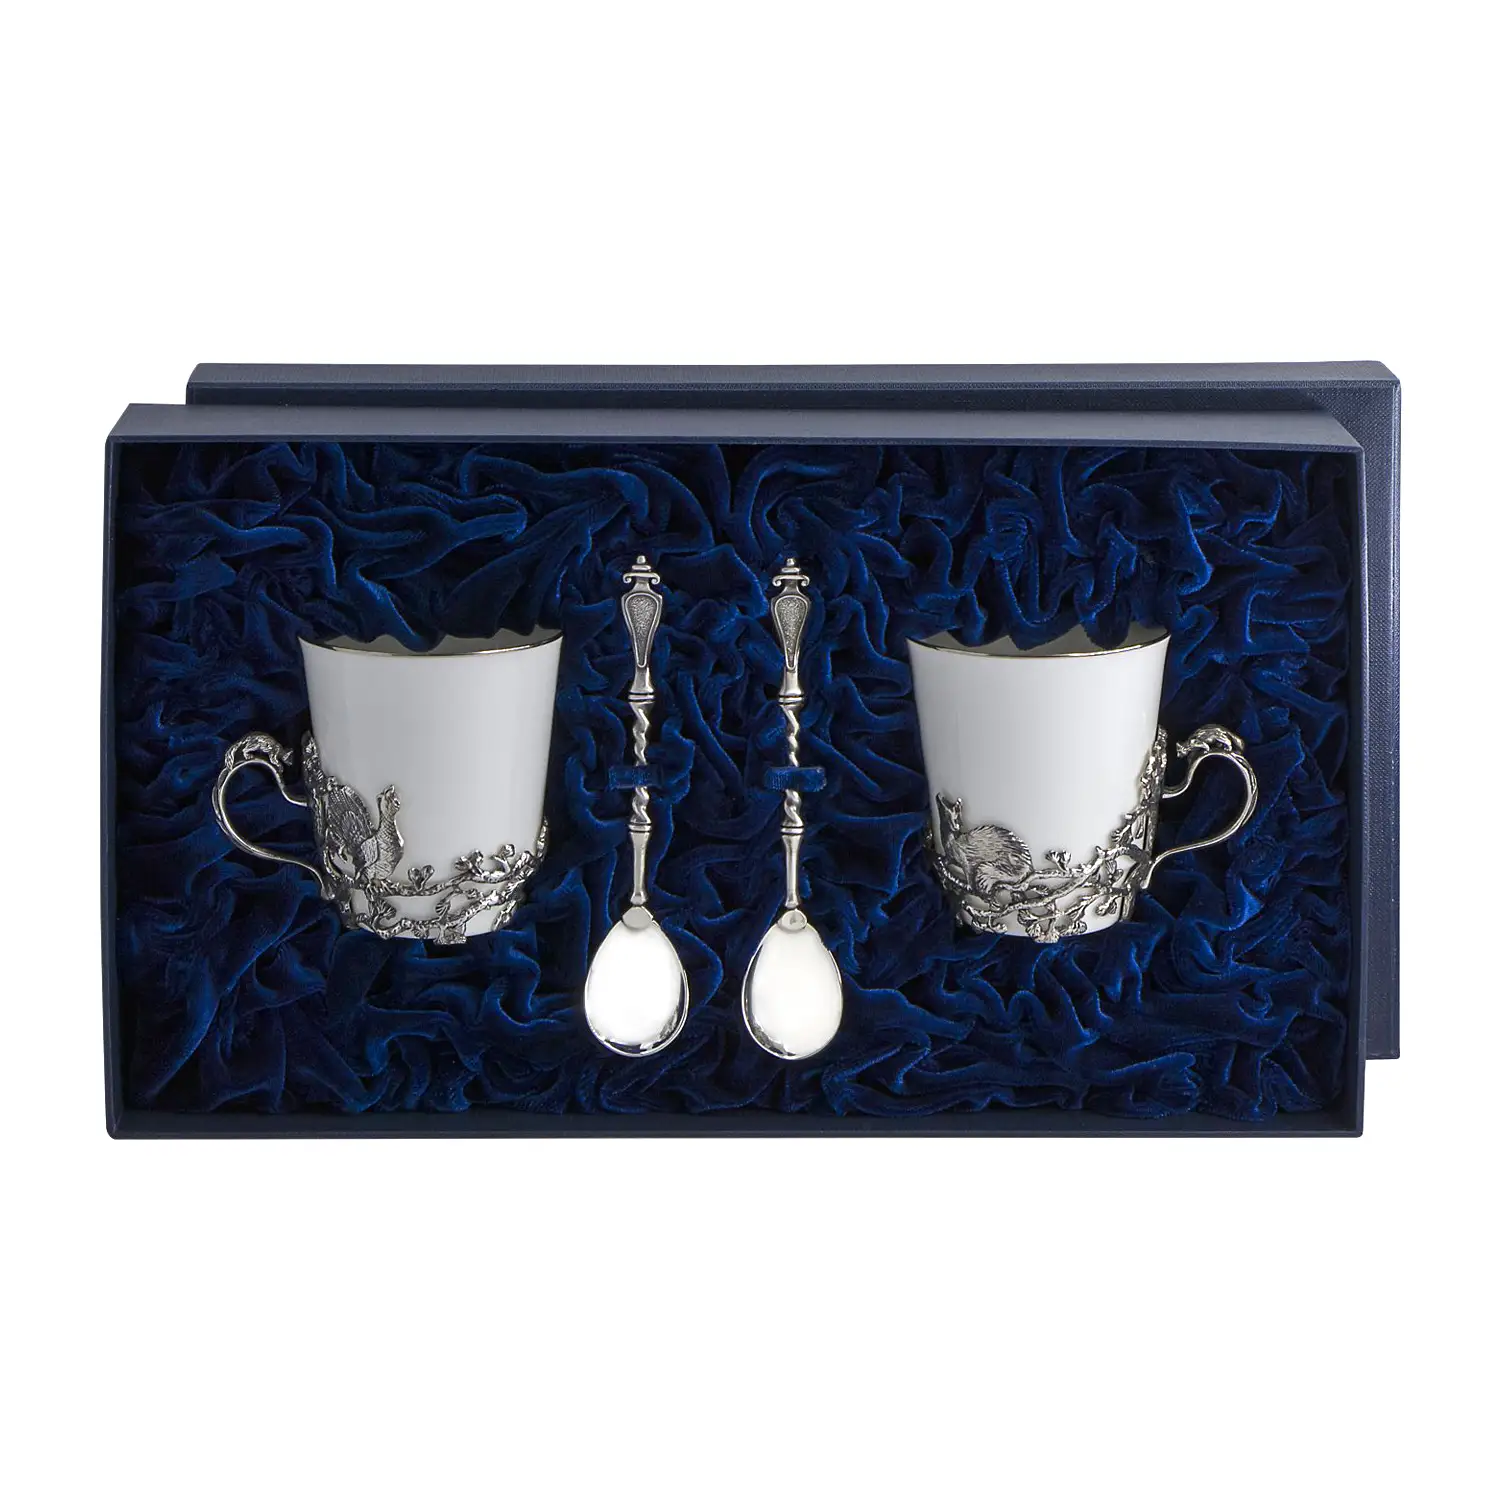 Набор чайных чашек Куница: ложка, чашка (Серебро 925) набор чайных чашек симфония ложка чашка серебро 925